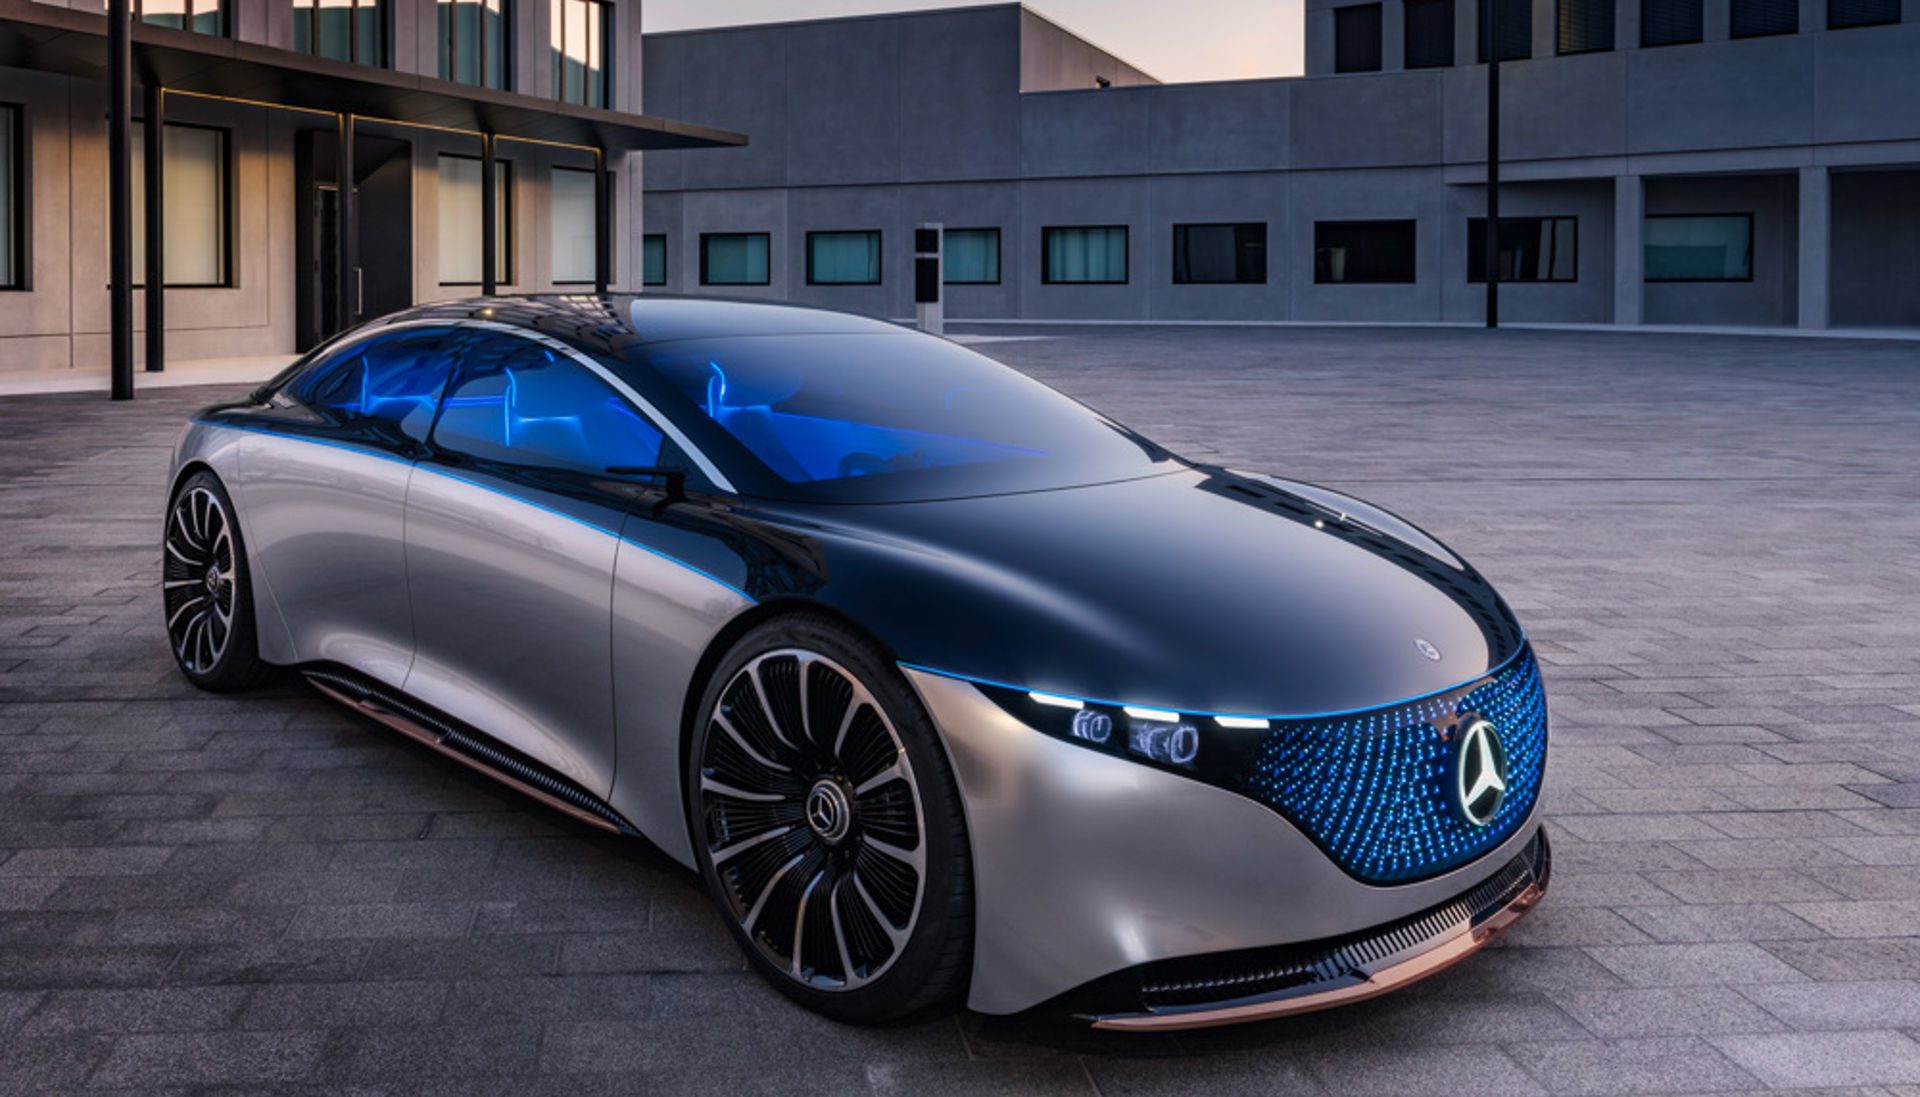 Samochody elektryczne super pojazdy przyszłości Point